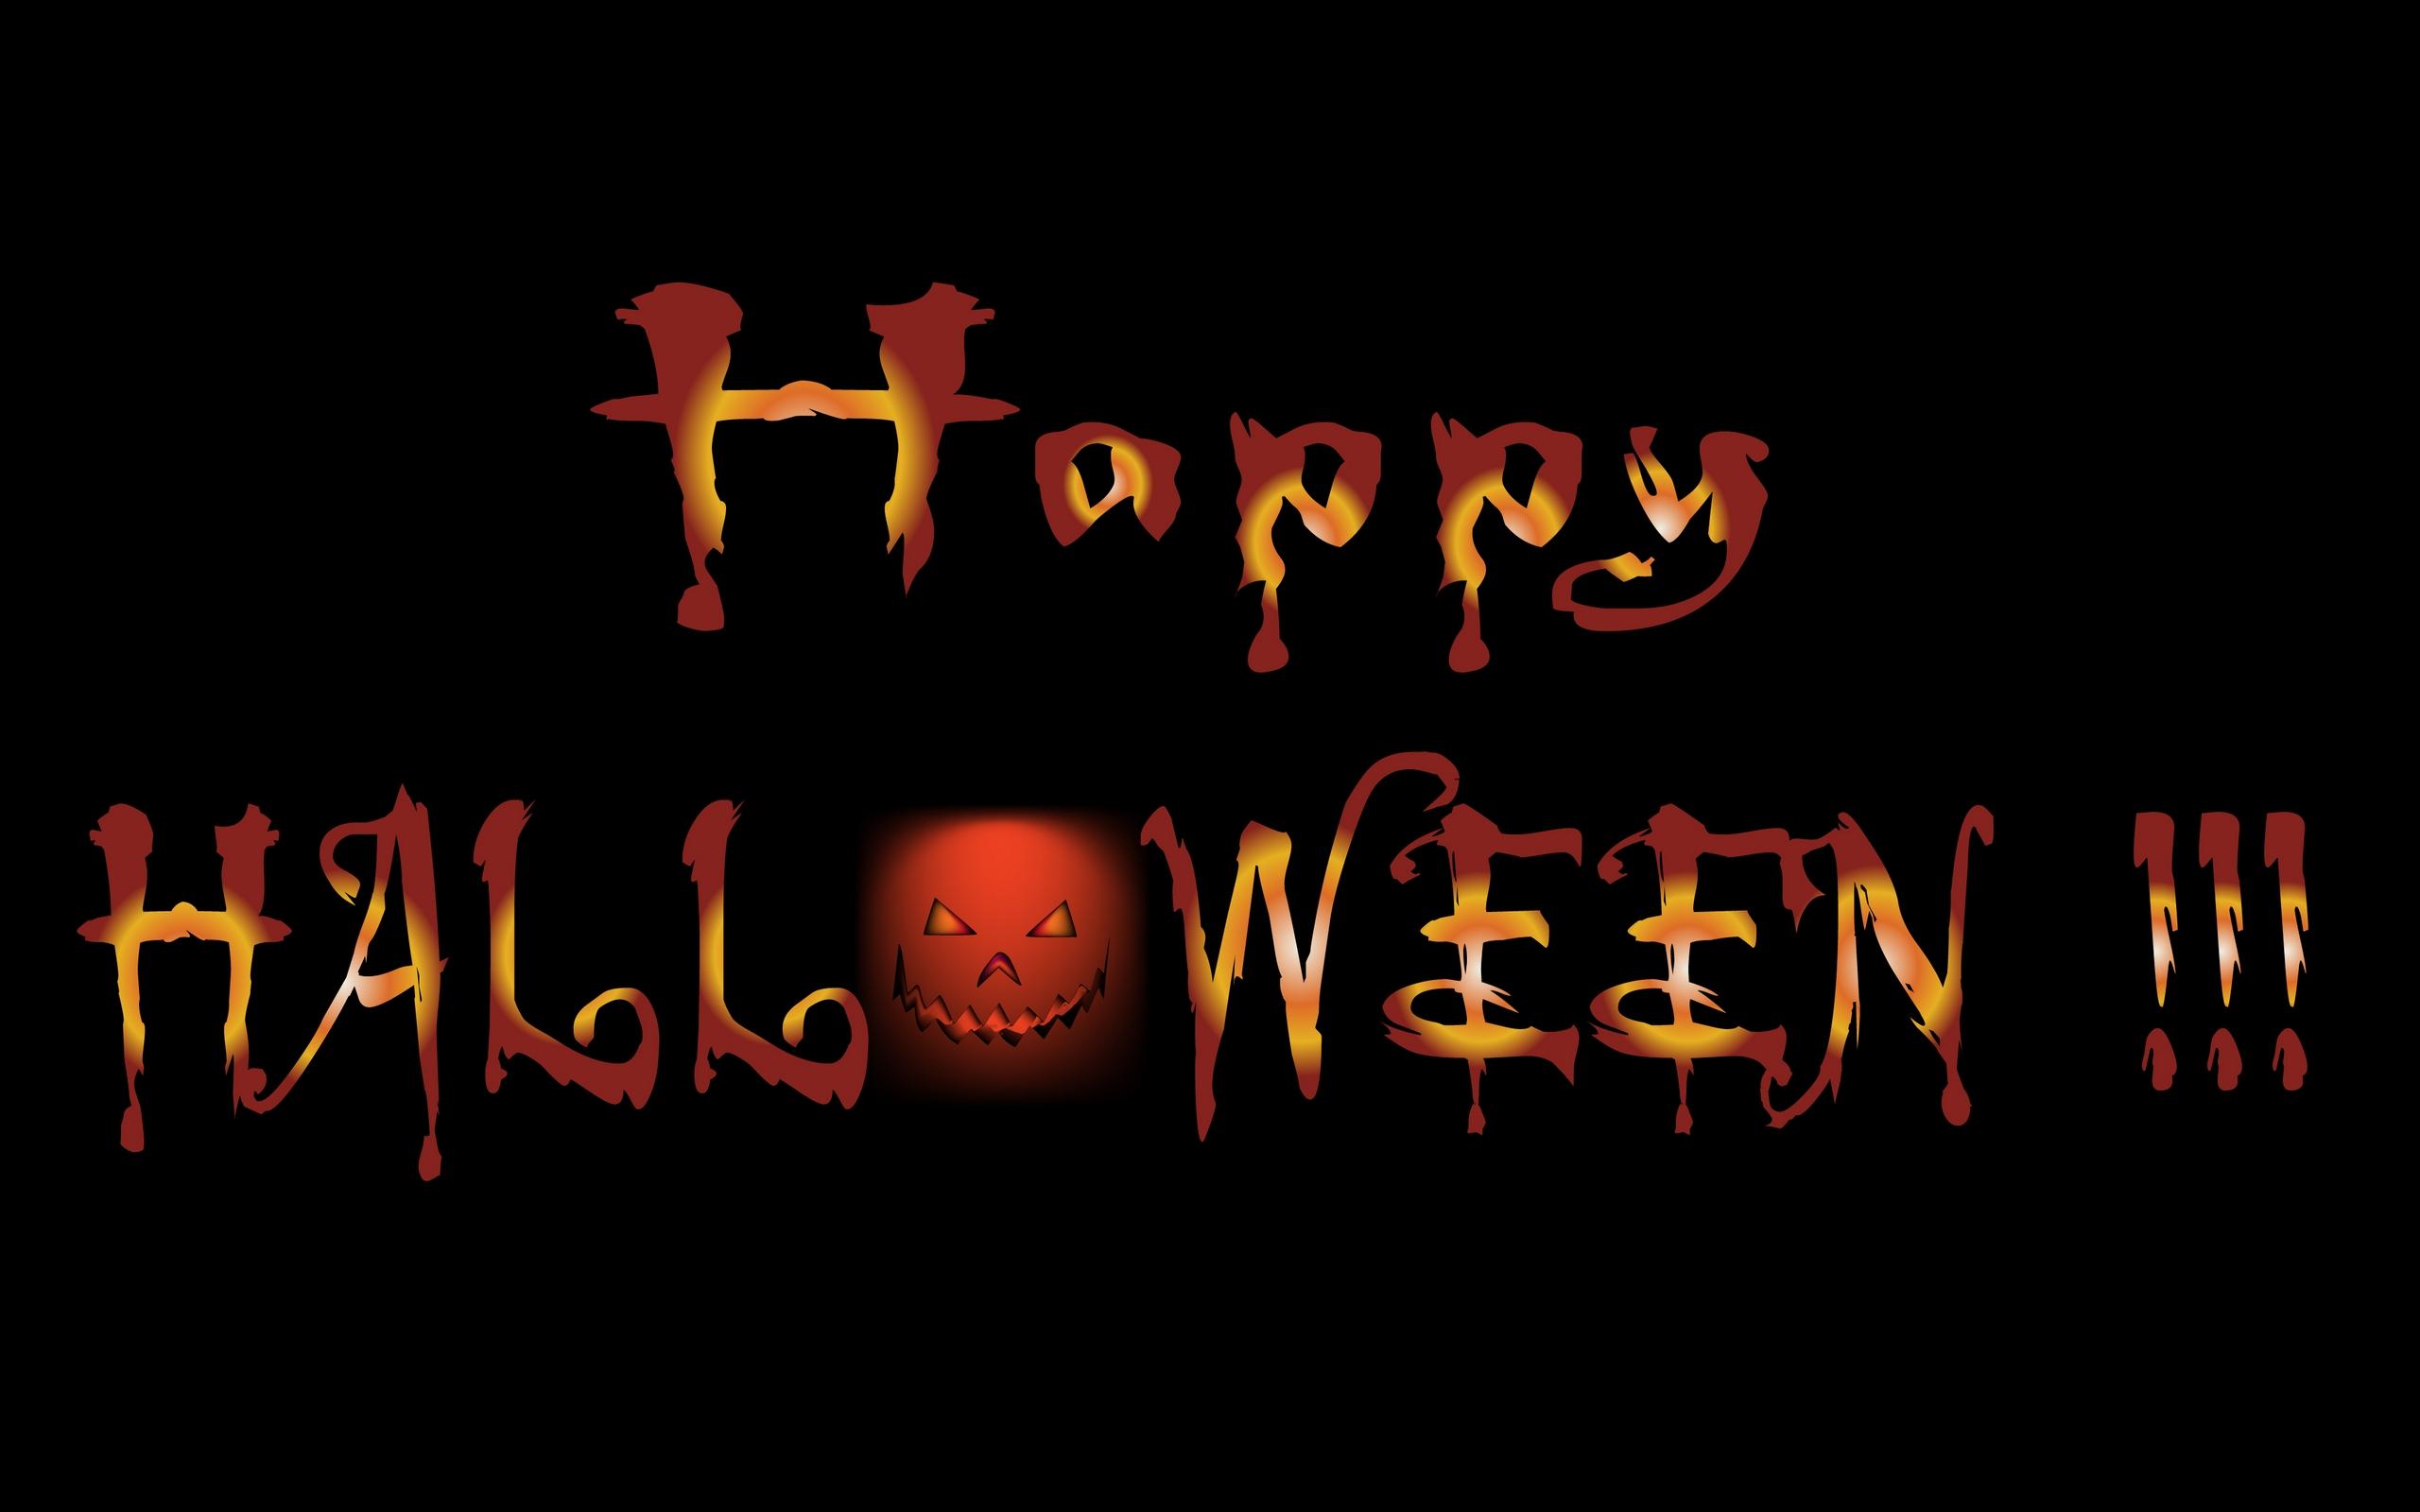 Happy Halloween Wallpaper For Mobile, Desktop, iPhone